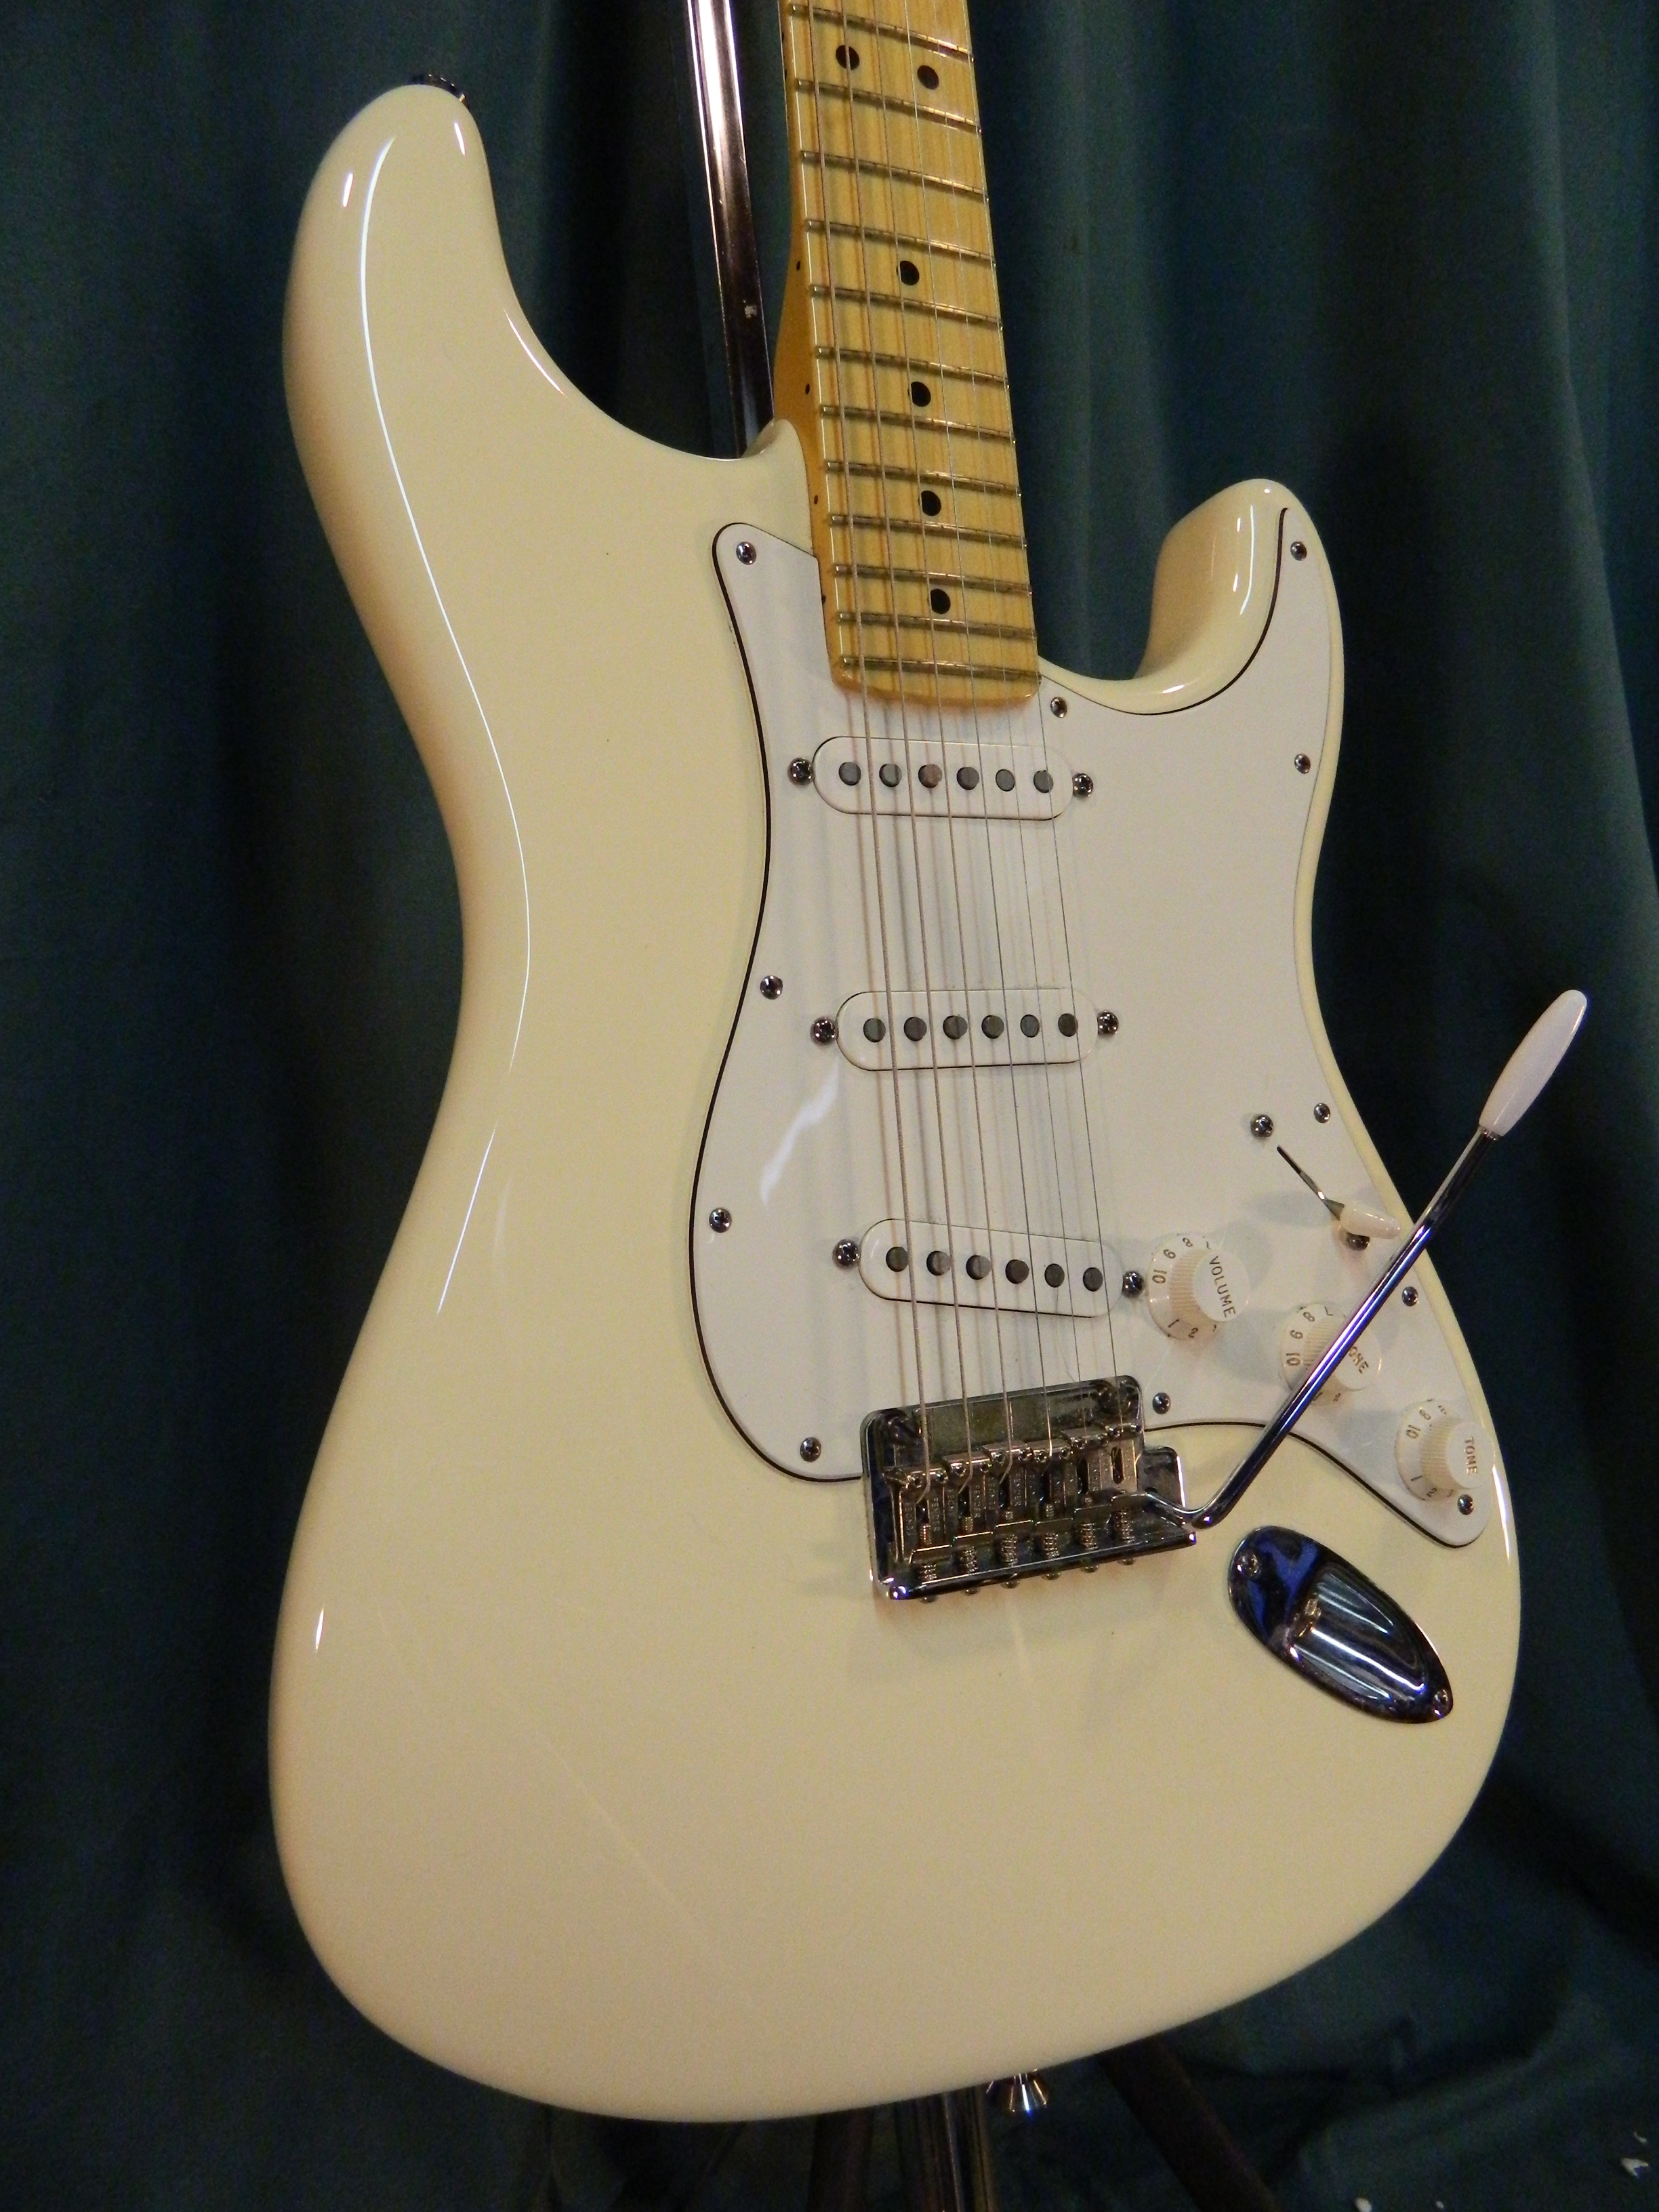 White stratocaster. Fender Stratocaster Olympic White. Fender Stratocaster белый. Fender American Standard Stratocaster White. Fender Olympic White.